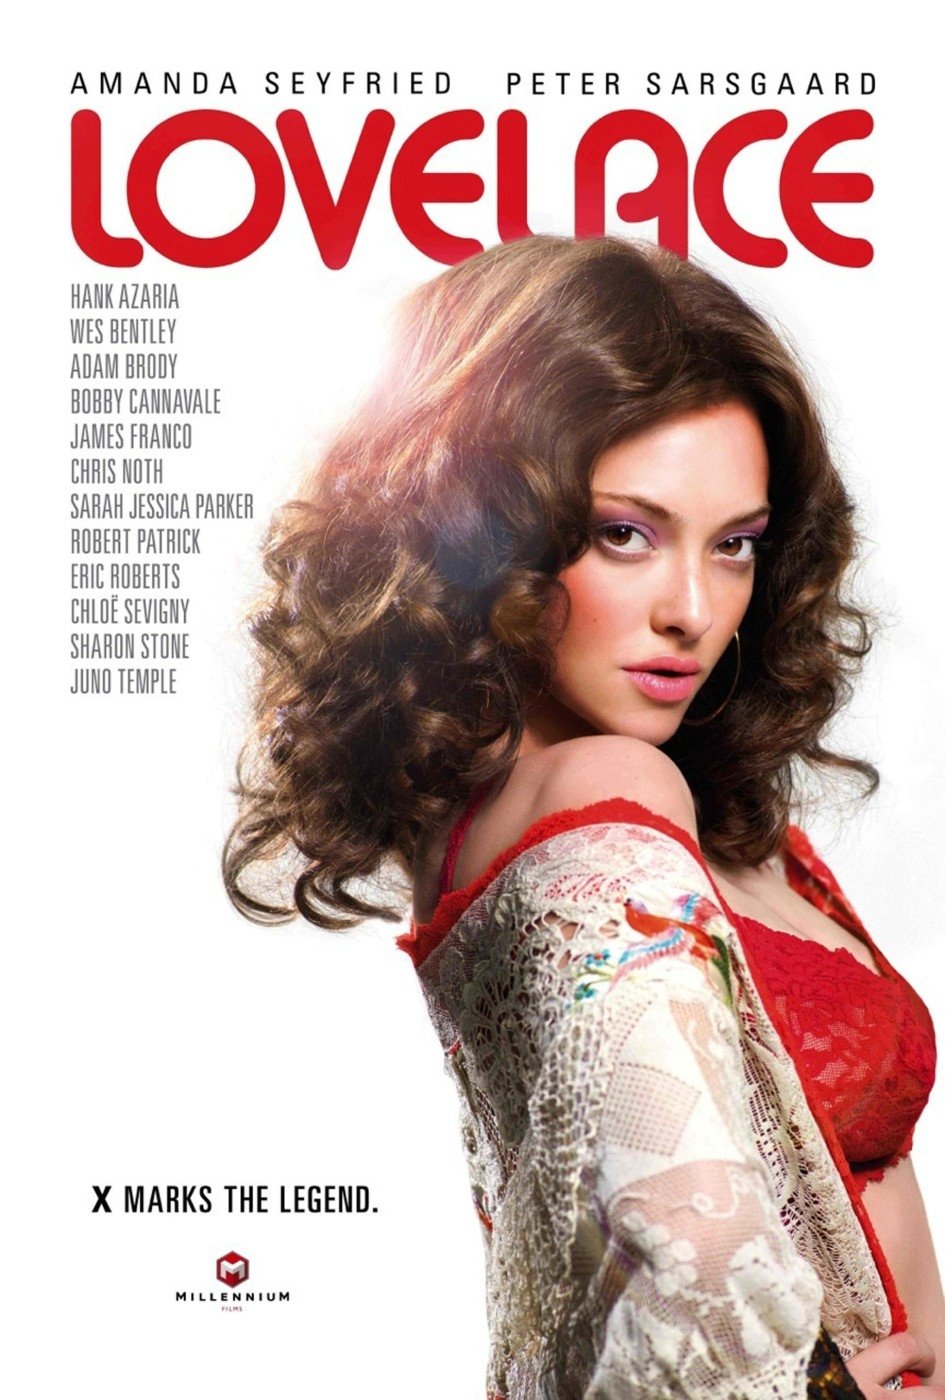 Plakát k novému filmu Lovelace